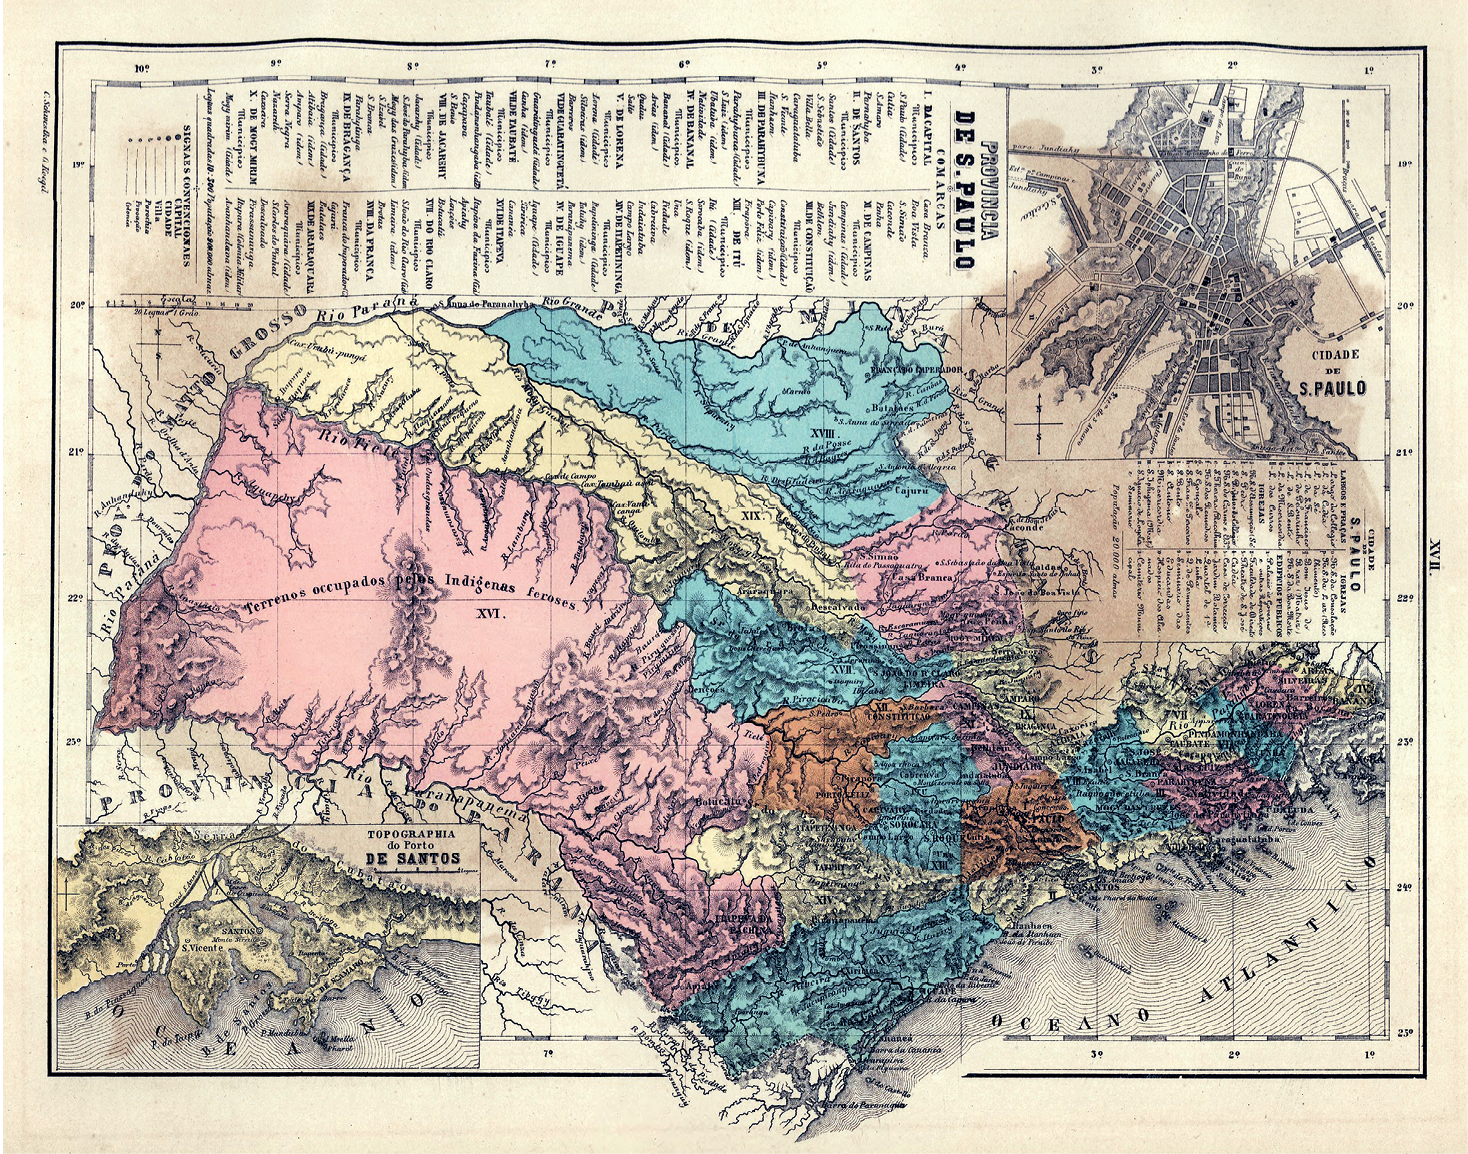 Fotografia. Mapa antigo da província de São Paulo, com representação topográfica indicando tipos de terrenos, bem como textos no topo.